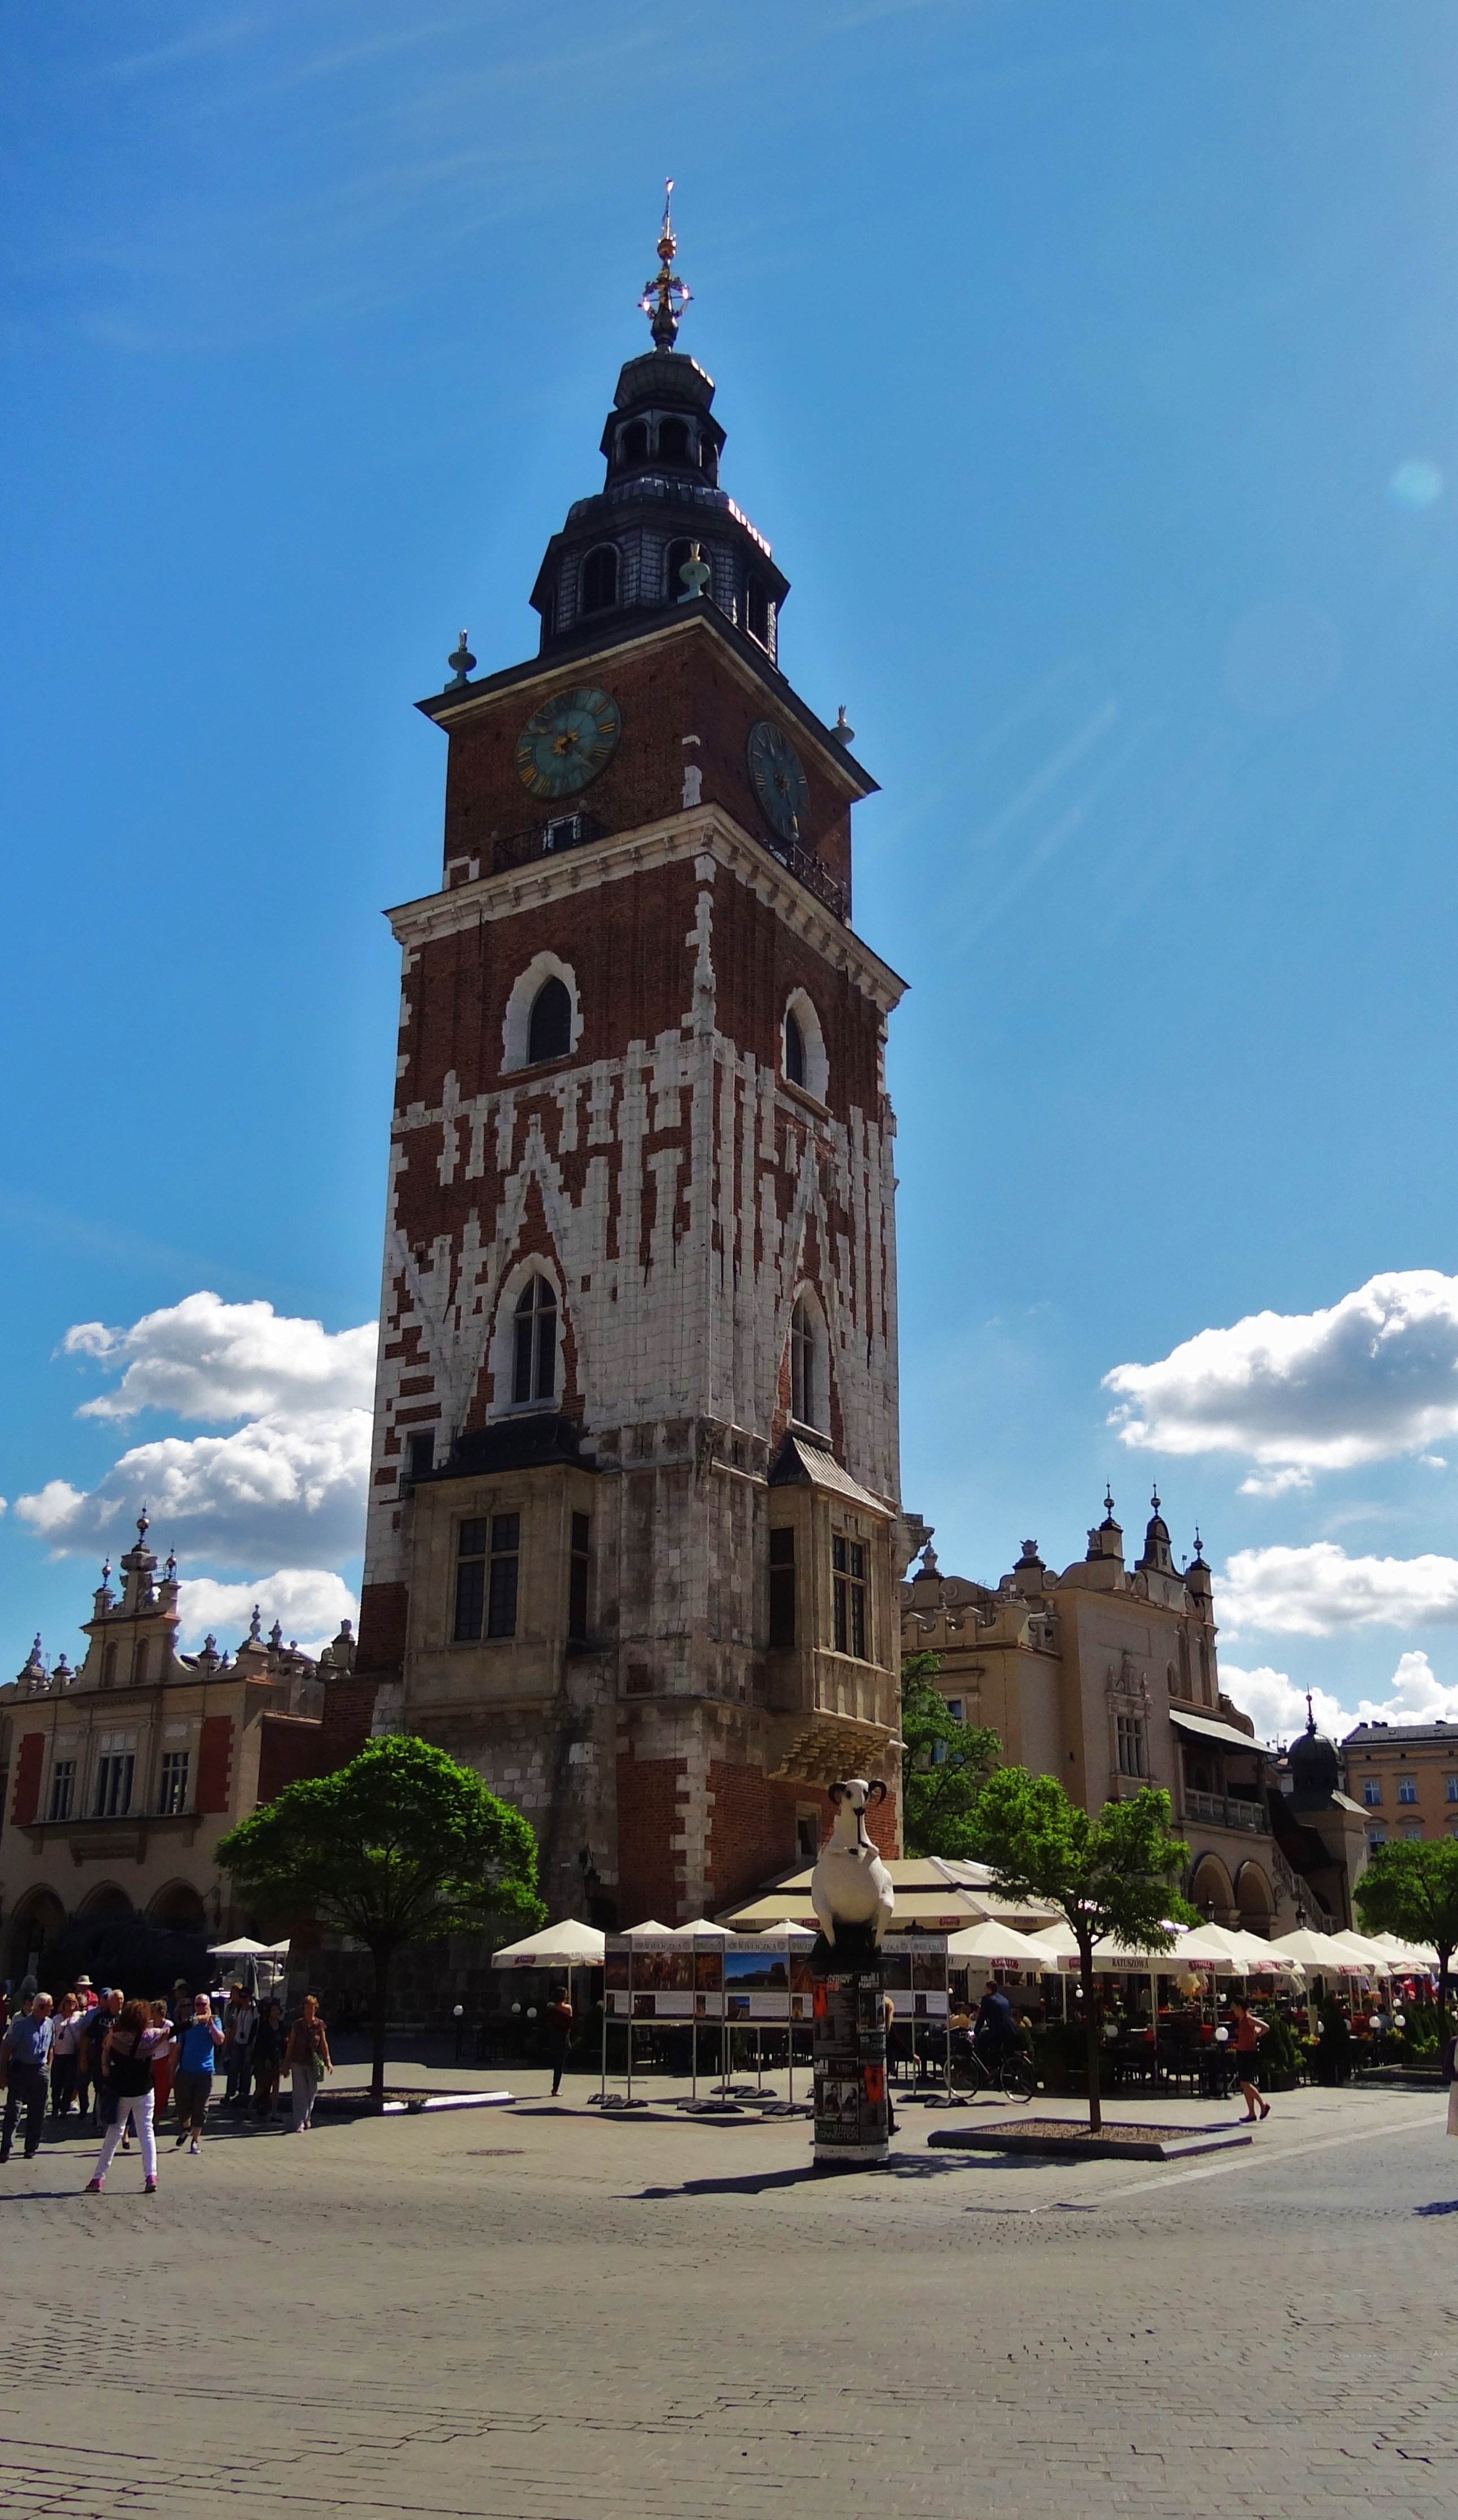 Foto: Wieża ratuszowa w Krakowie - Kraków (Lesser Poland Voivodeship), Polonia